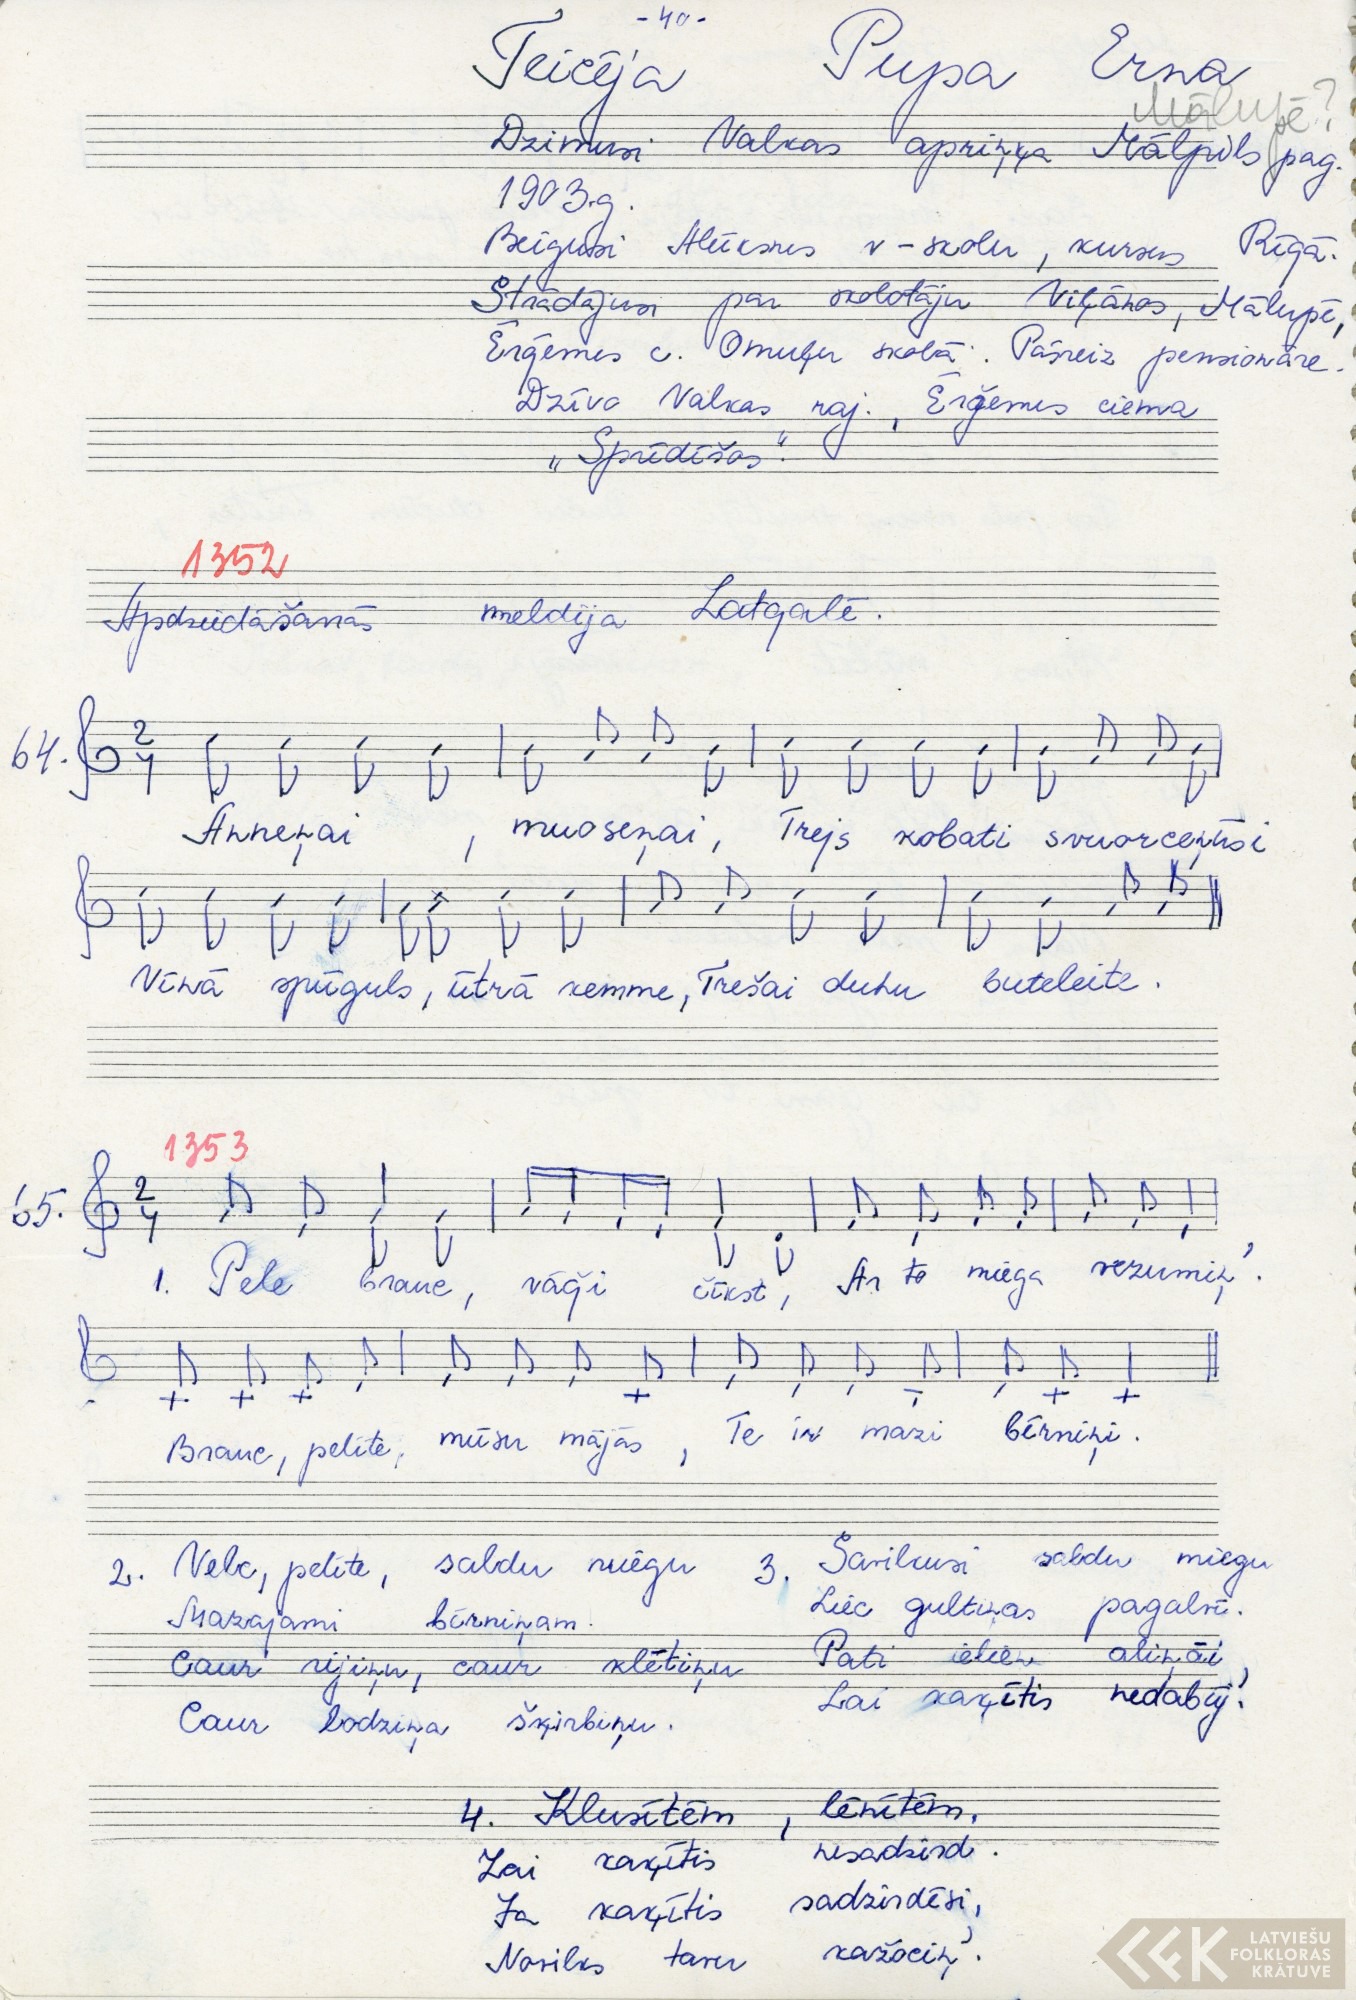 Anneņai, muoseņai treis kobati svuorceņūs (apdziedāšanās dziesma) (1967)